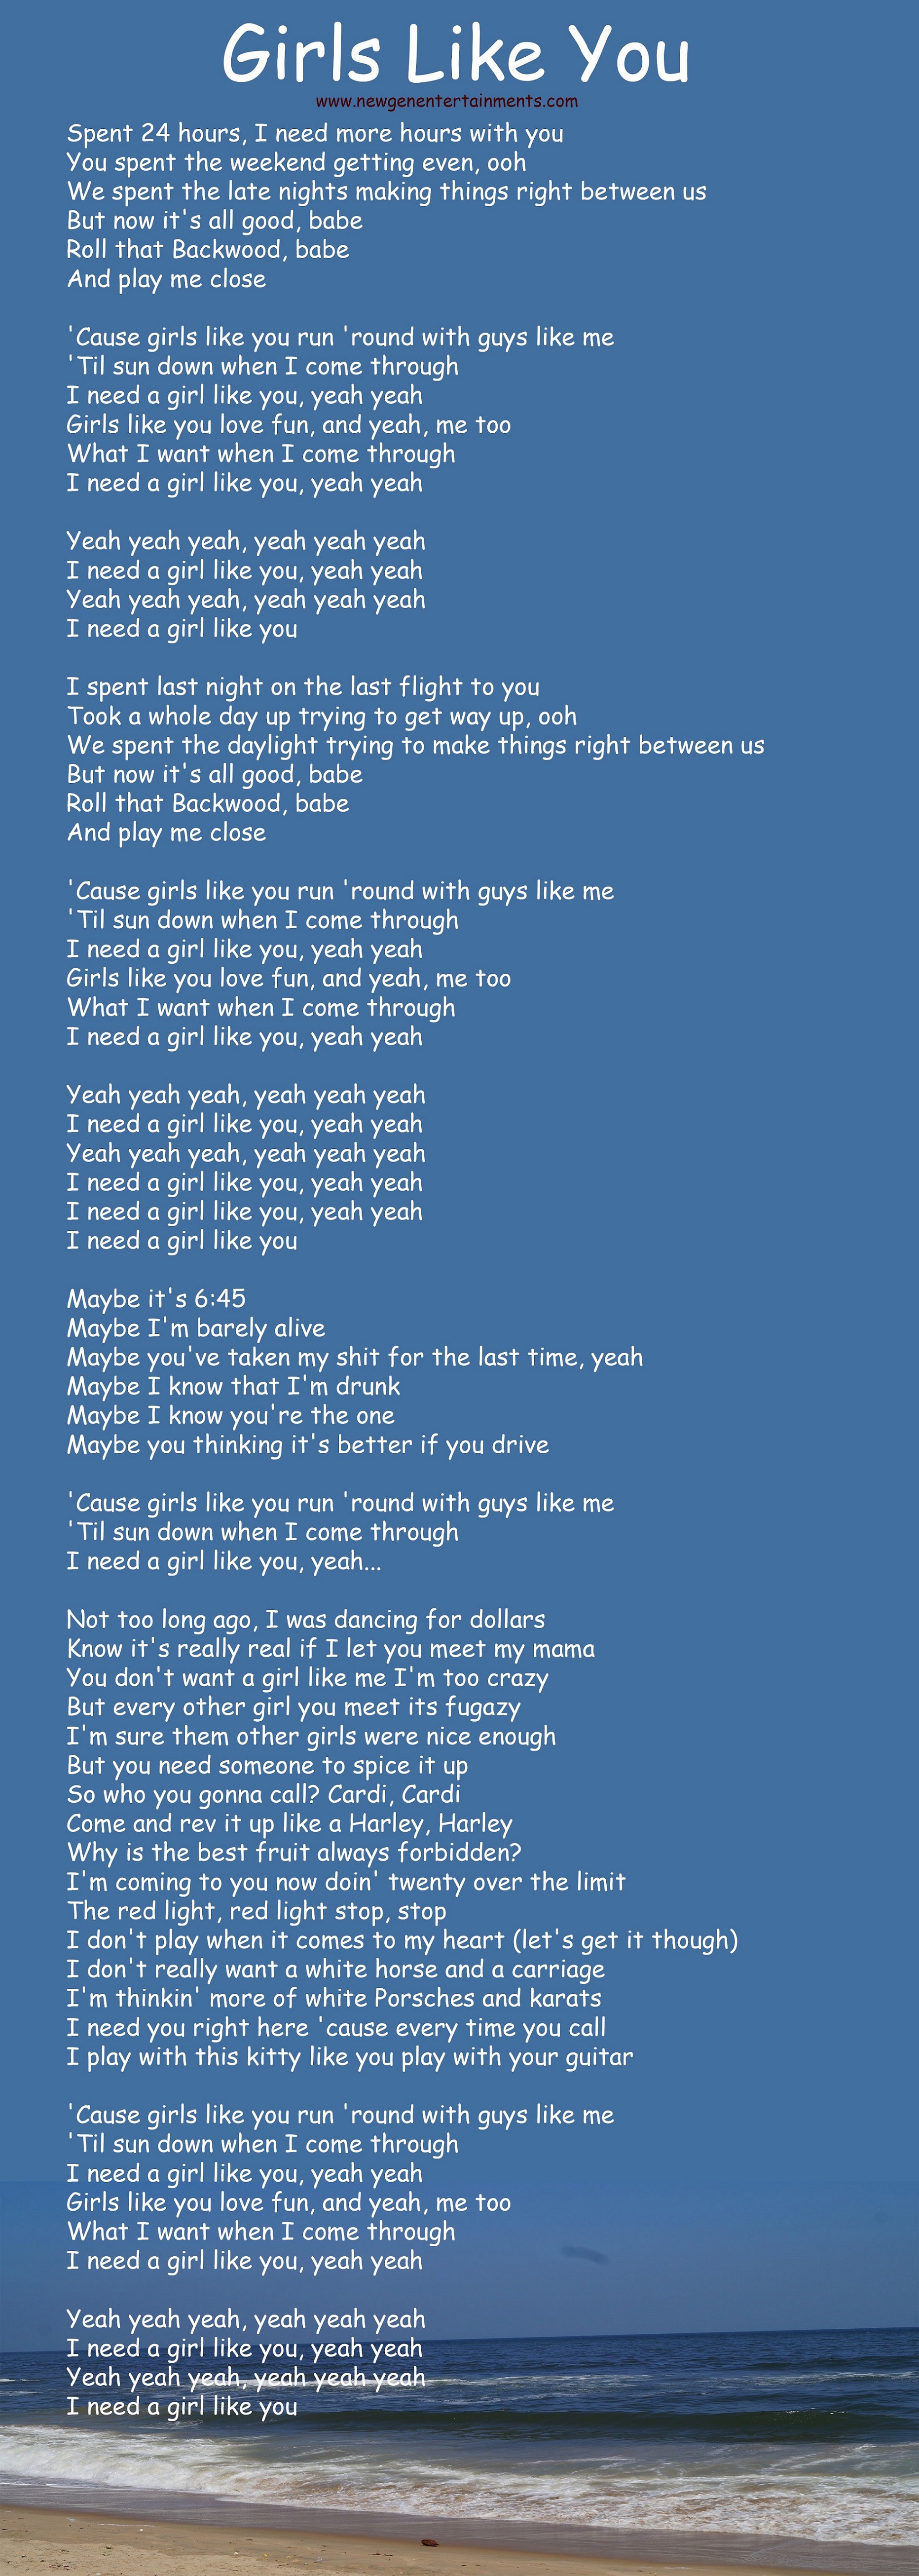 Cardi B Song Girl Like You Lyrics لم يسبق له مثيل الصور Tier3 Xyz